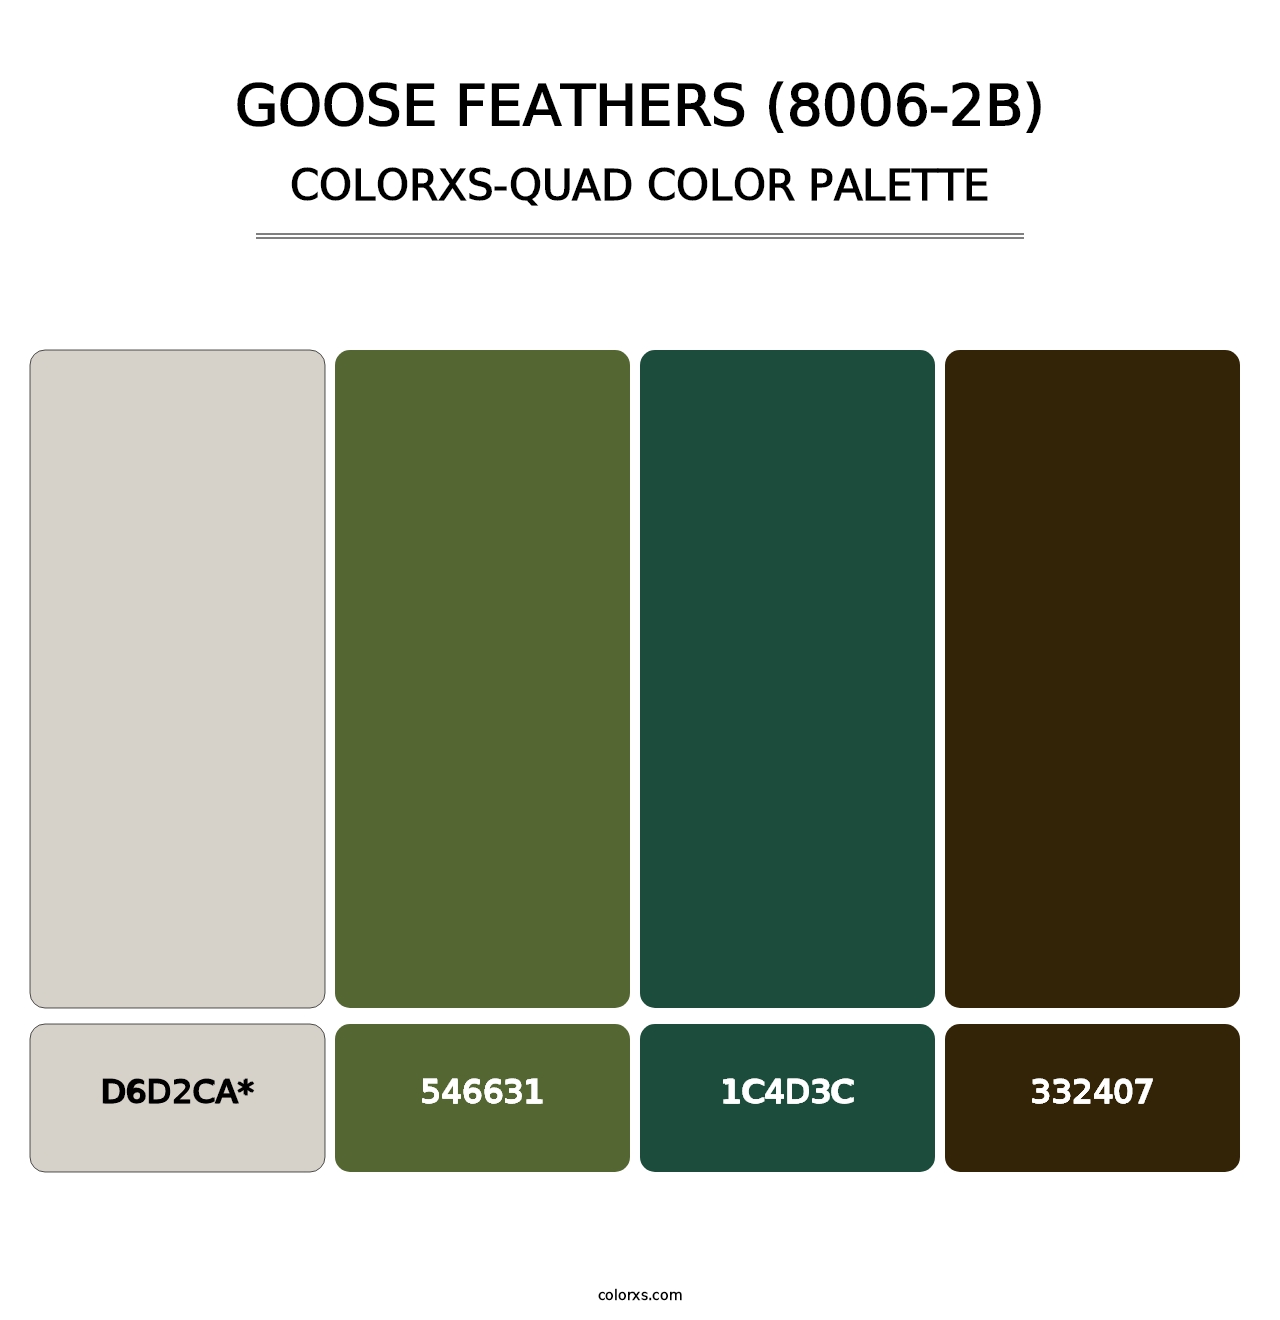 Goose Feathers (8006-2B) - Colorxs Quad Palette